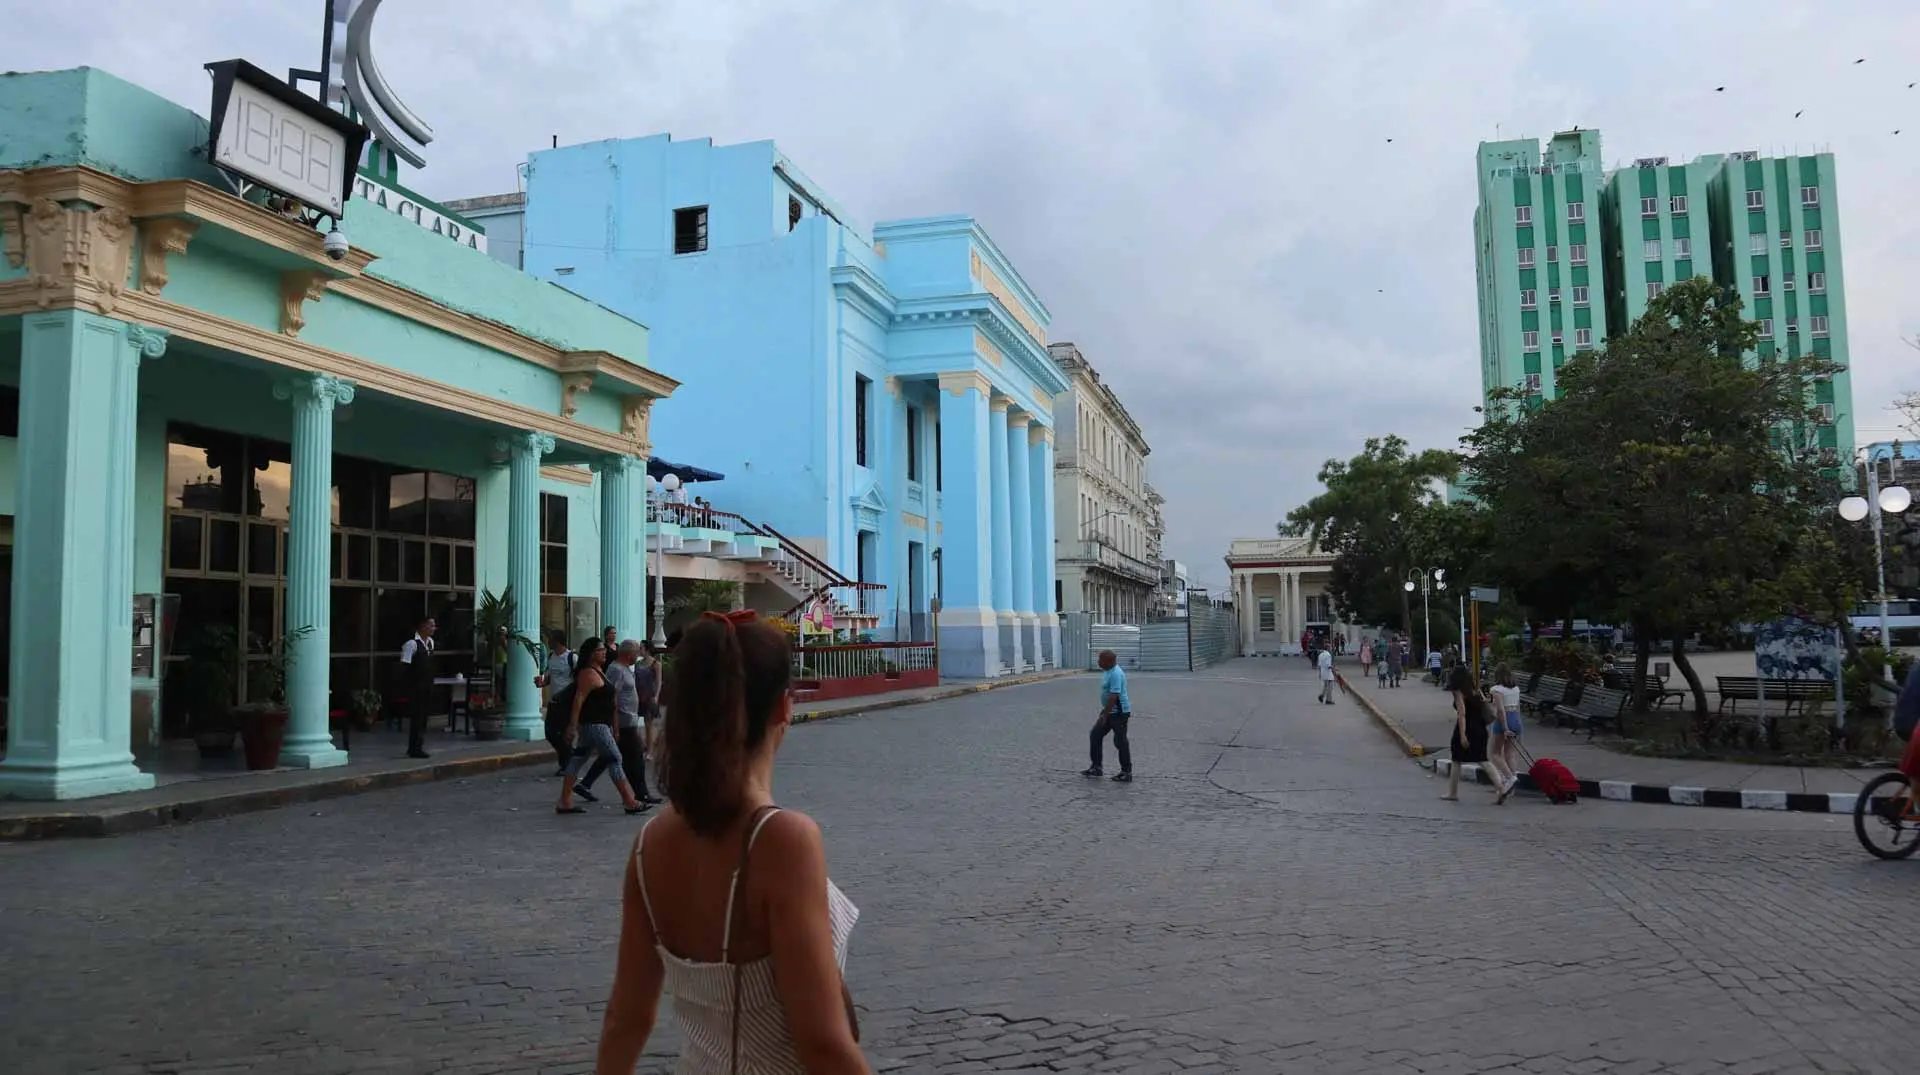 Disfruta de las maravillas de Cuba en un viaje en grupo reducido empezando por la Habana. Música, coches clásicos, playas paradisíacas y naturaleza.